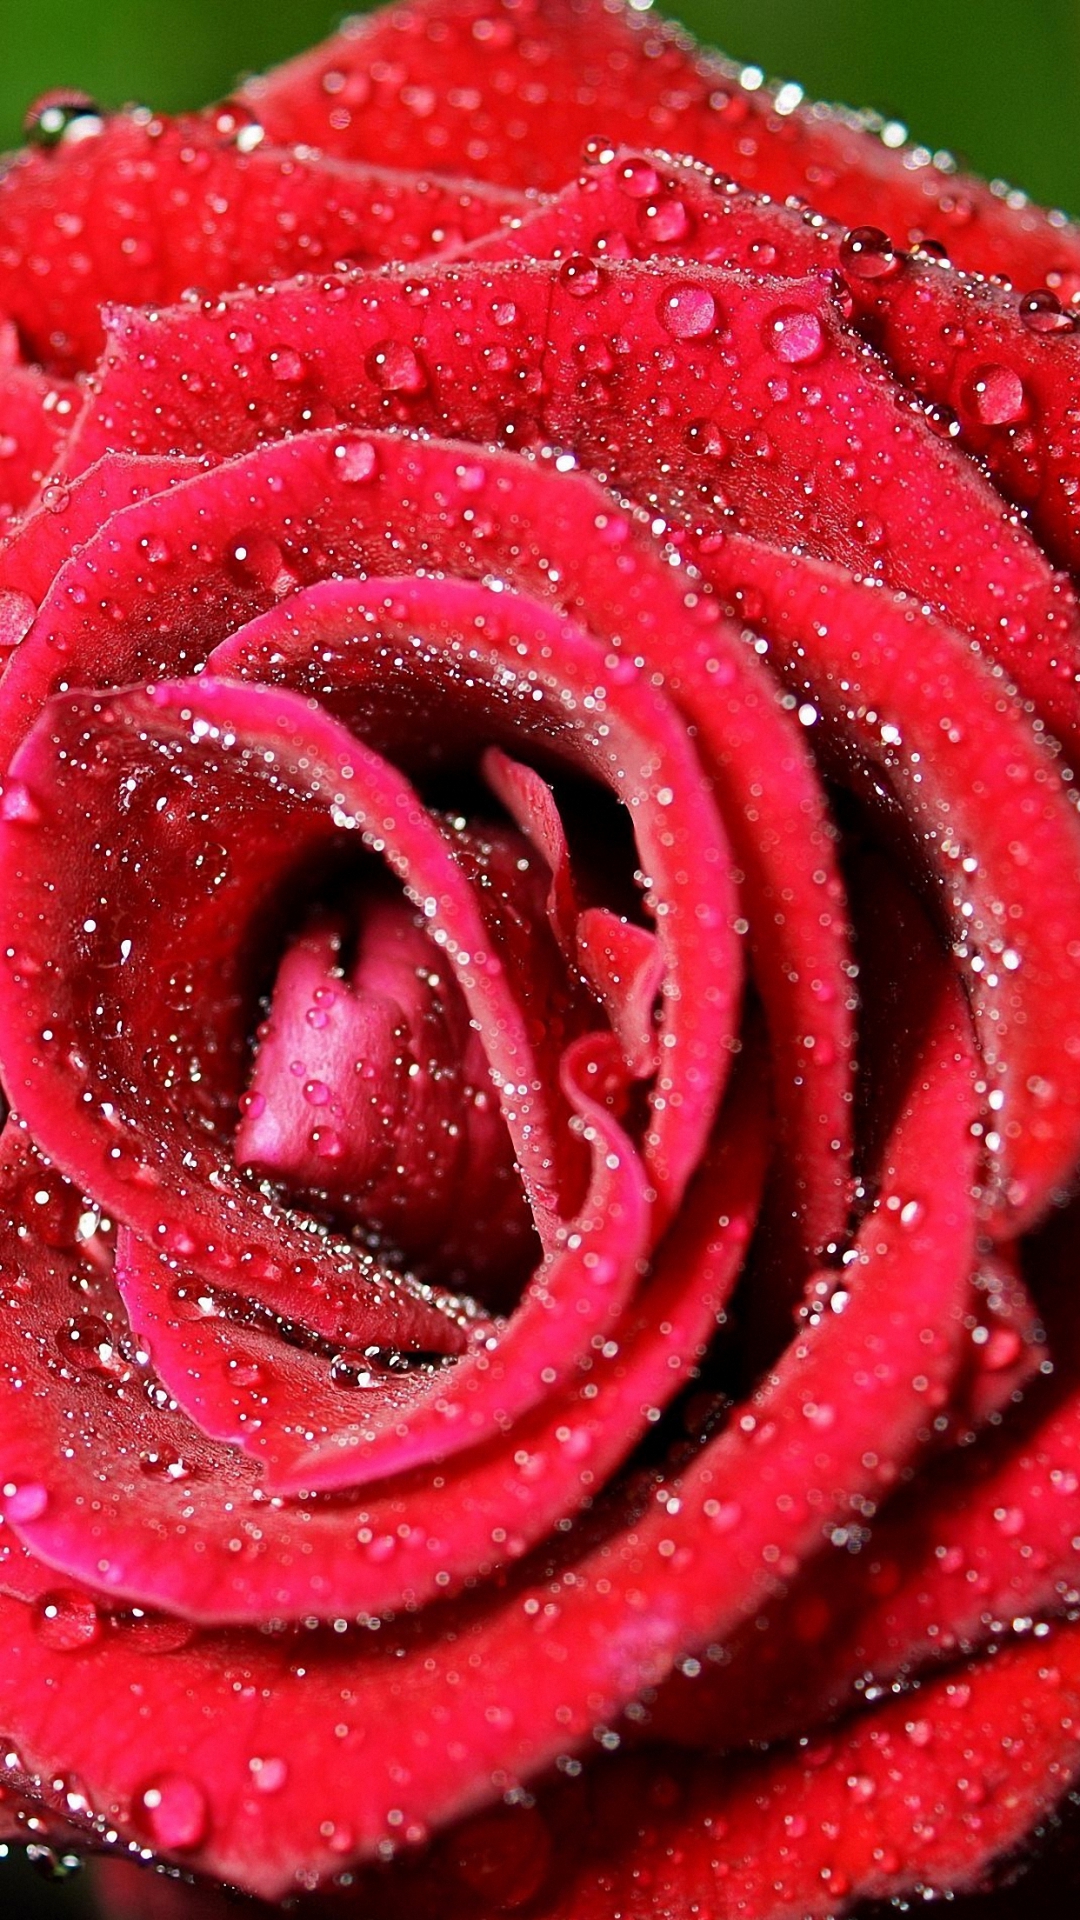 Rose Flower Wallpaper For Mobile Phone Hd